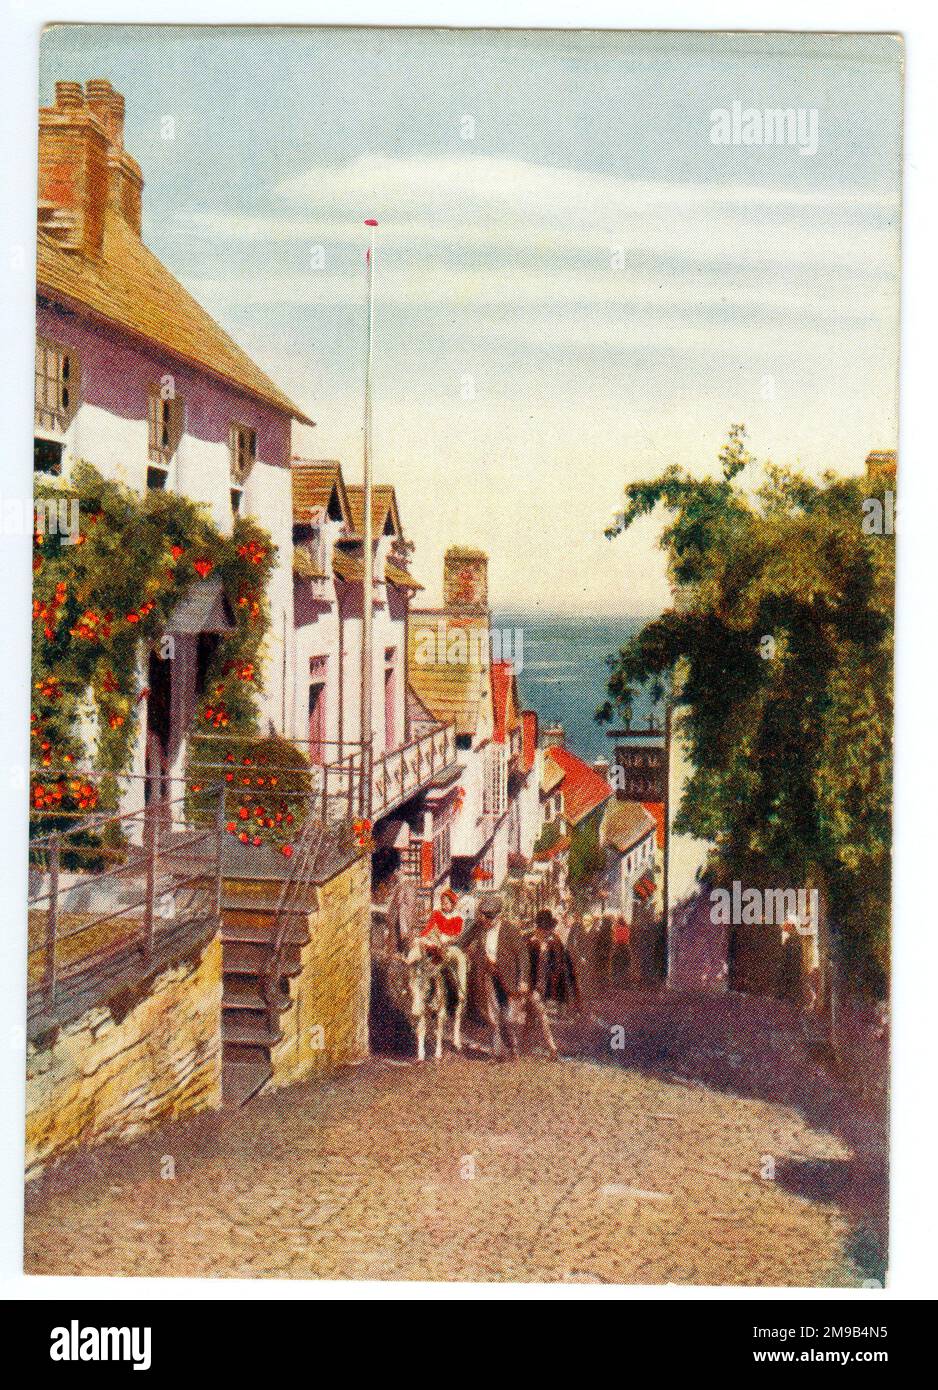 La scheda è una delle serie di schede pubblicitarie offerte da Godfrey Phillips Tobacco Company basato su Great Western Railway Posters. La vista è in discesa oltre il New Inn. Foto Stock